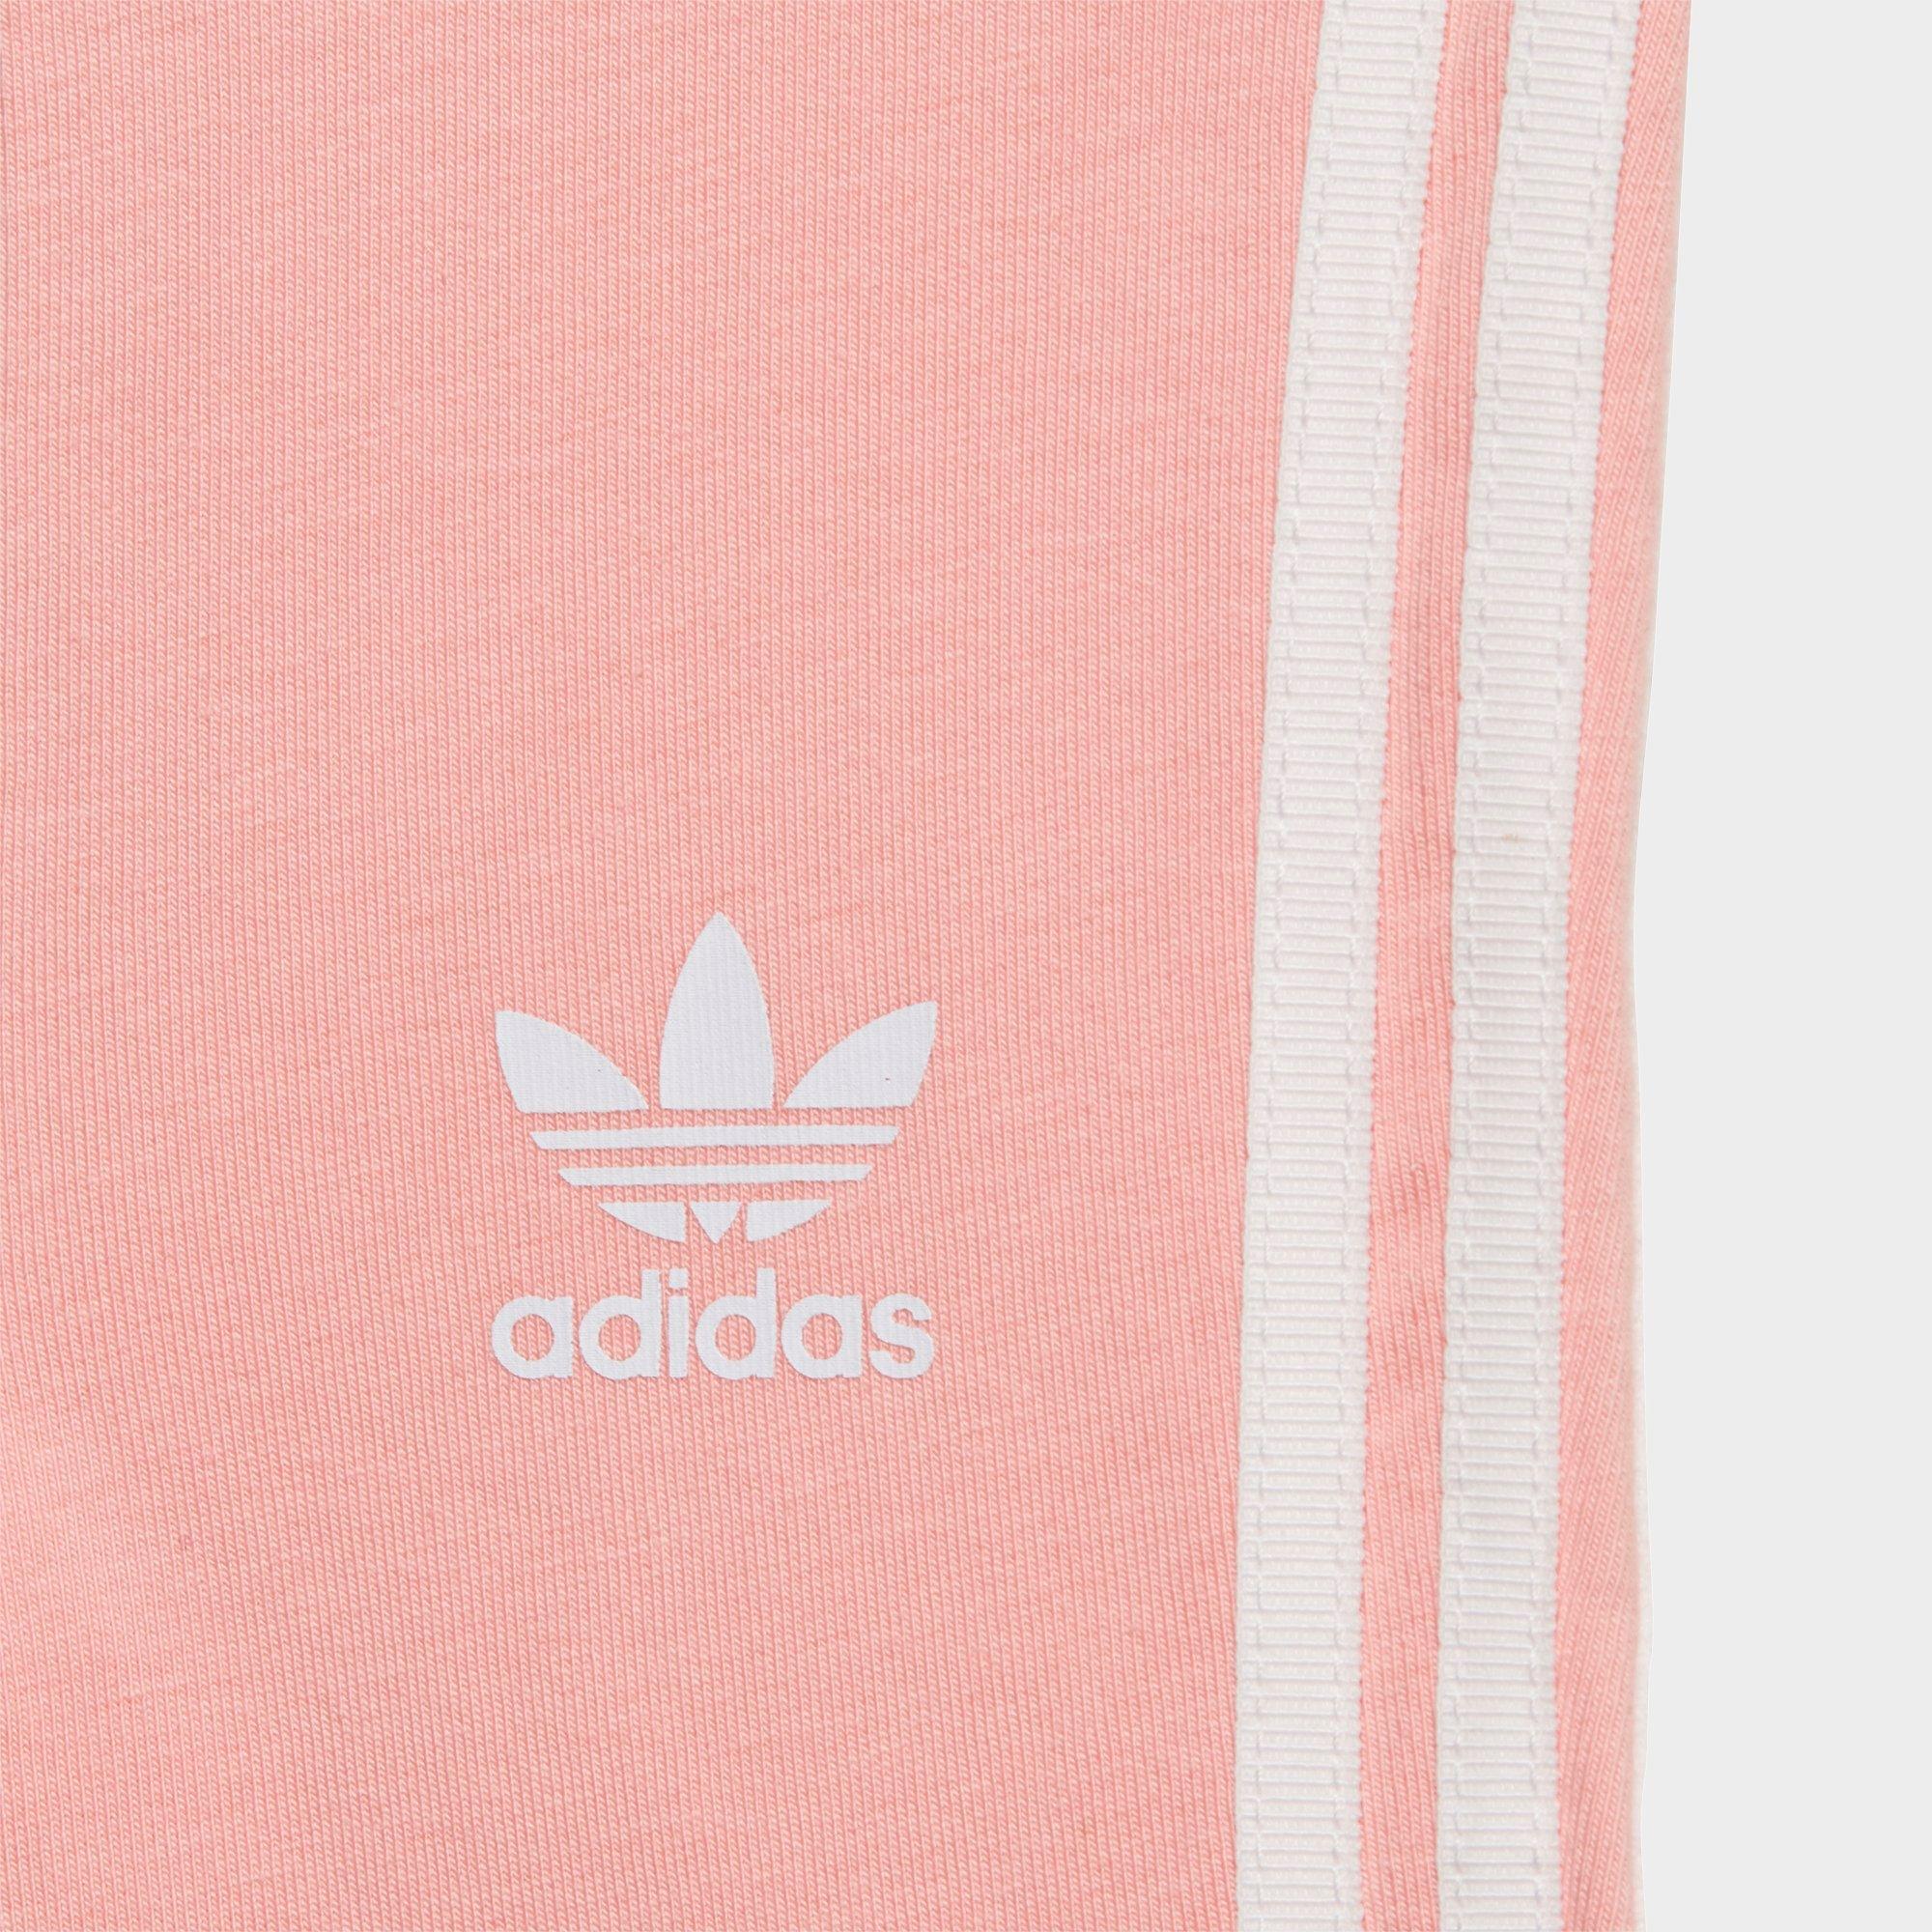 pink toddler adidas